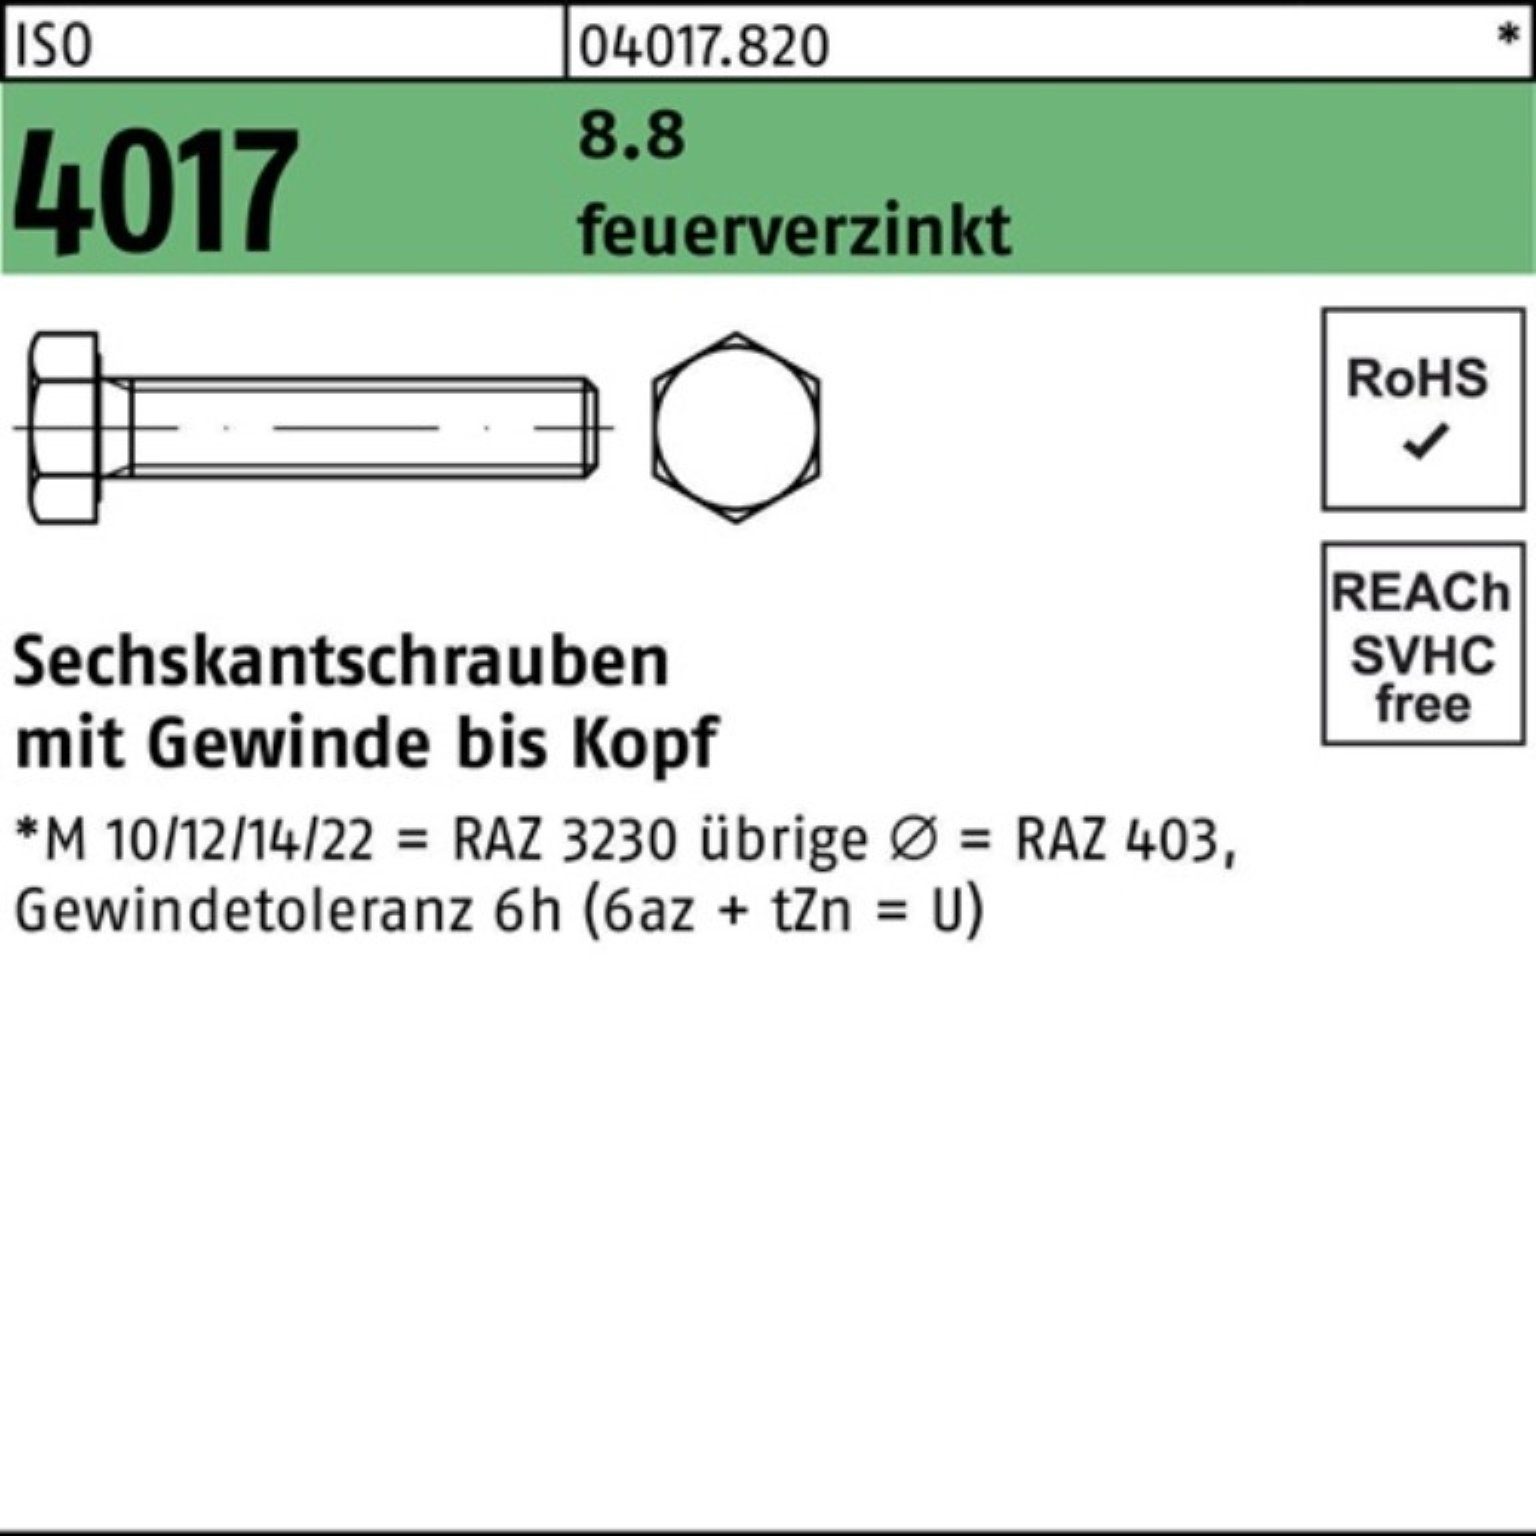 Bufab Sechskantschraube 100er Pack Sechskantschraube ISO 4017 VG M8x 90 8.8 feuerverz. 100 St